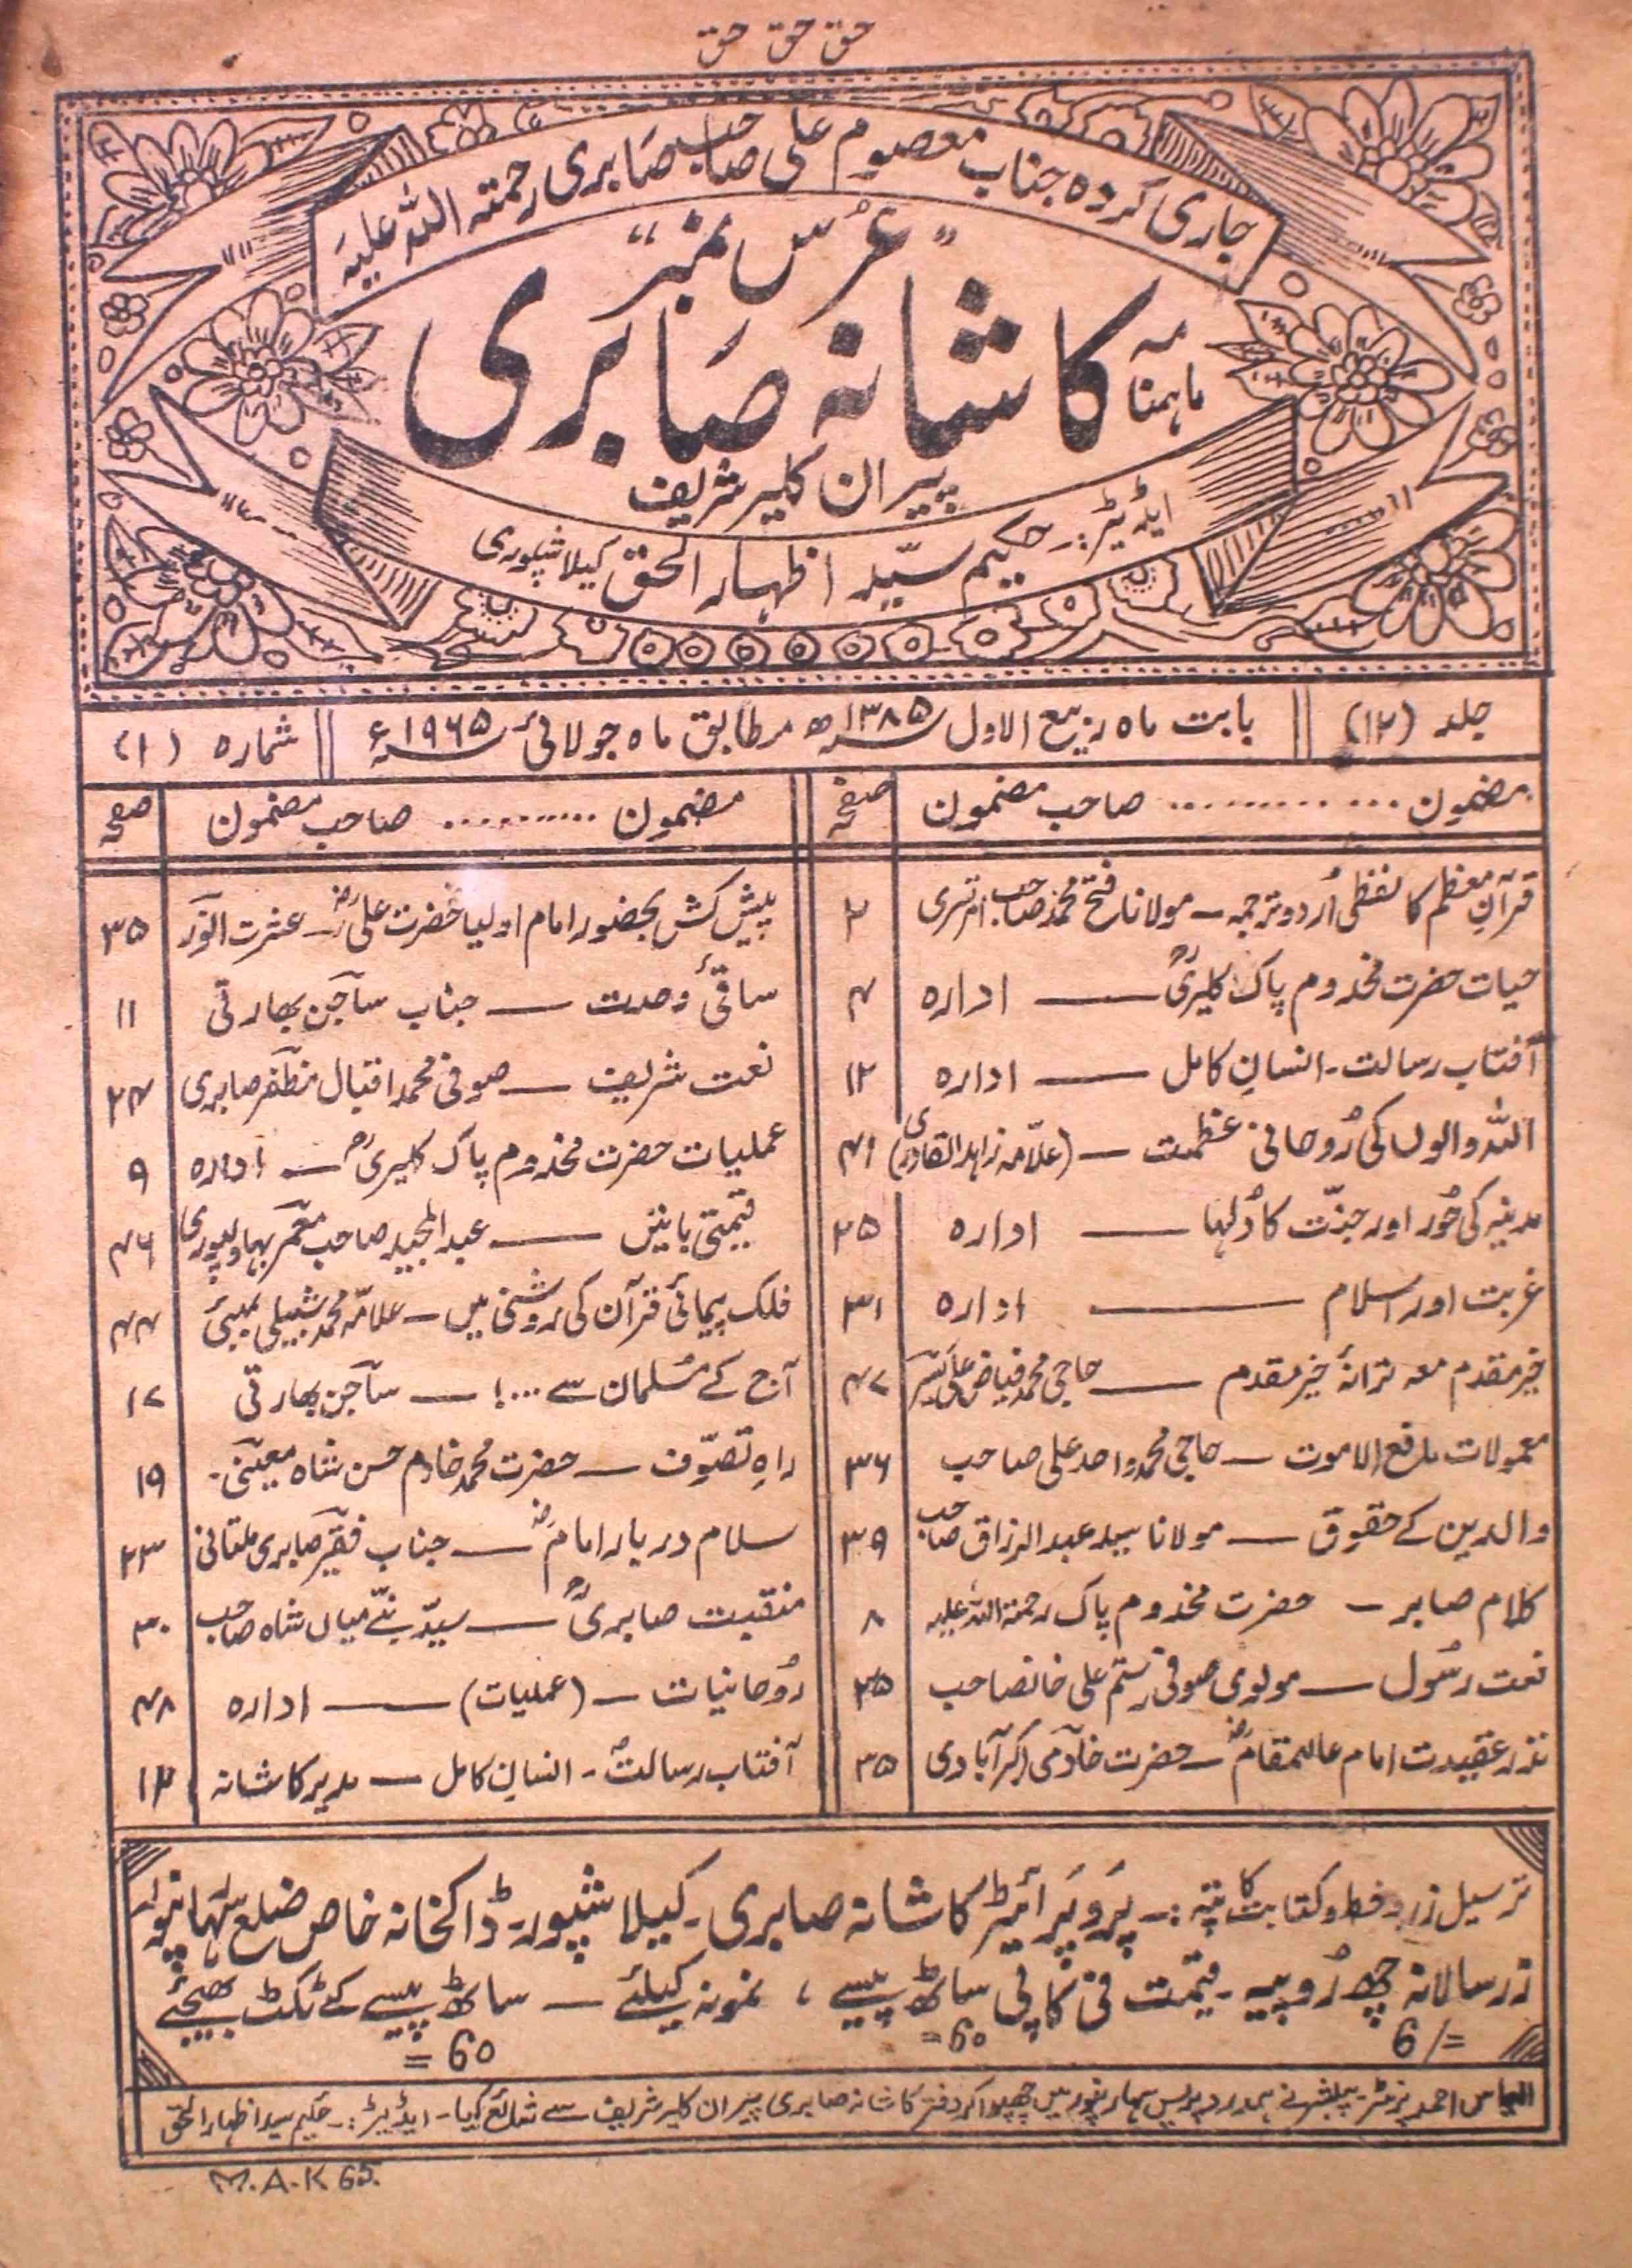 Kashana Saberi Jild 12 No 1 July 1965-SVK-Shumara Number-001